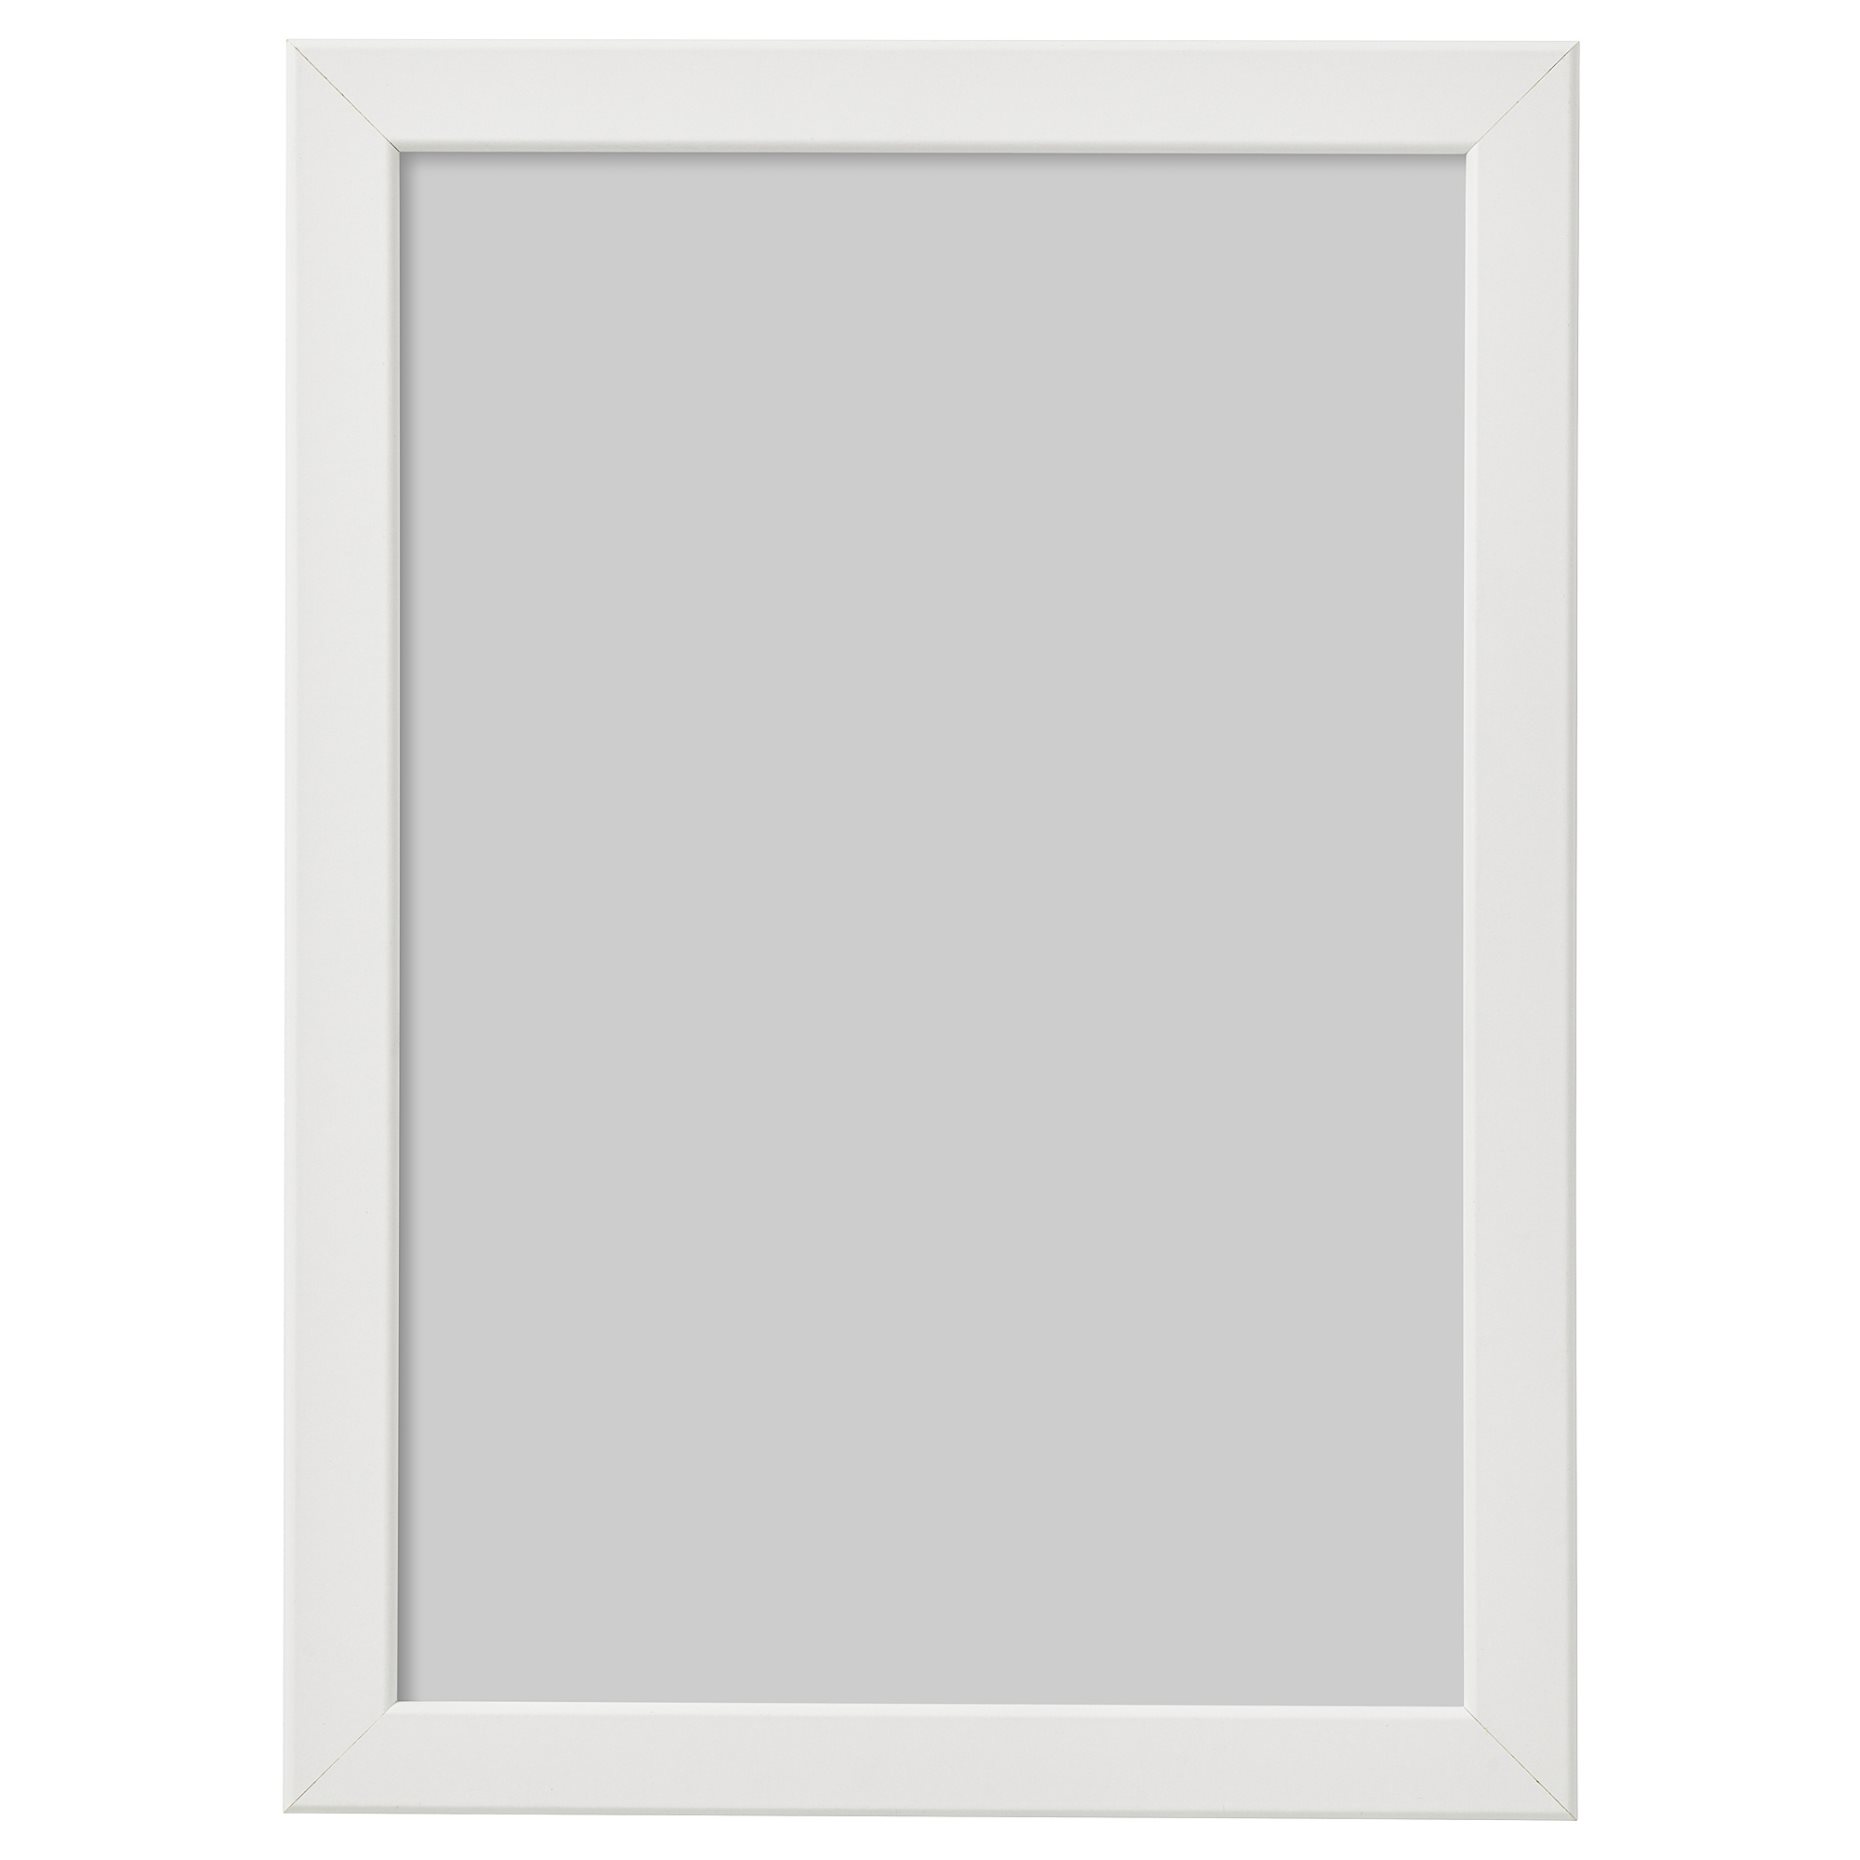 FISKBO, frame, 21x30 cm, 803.003.73